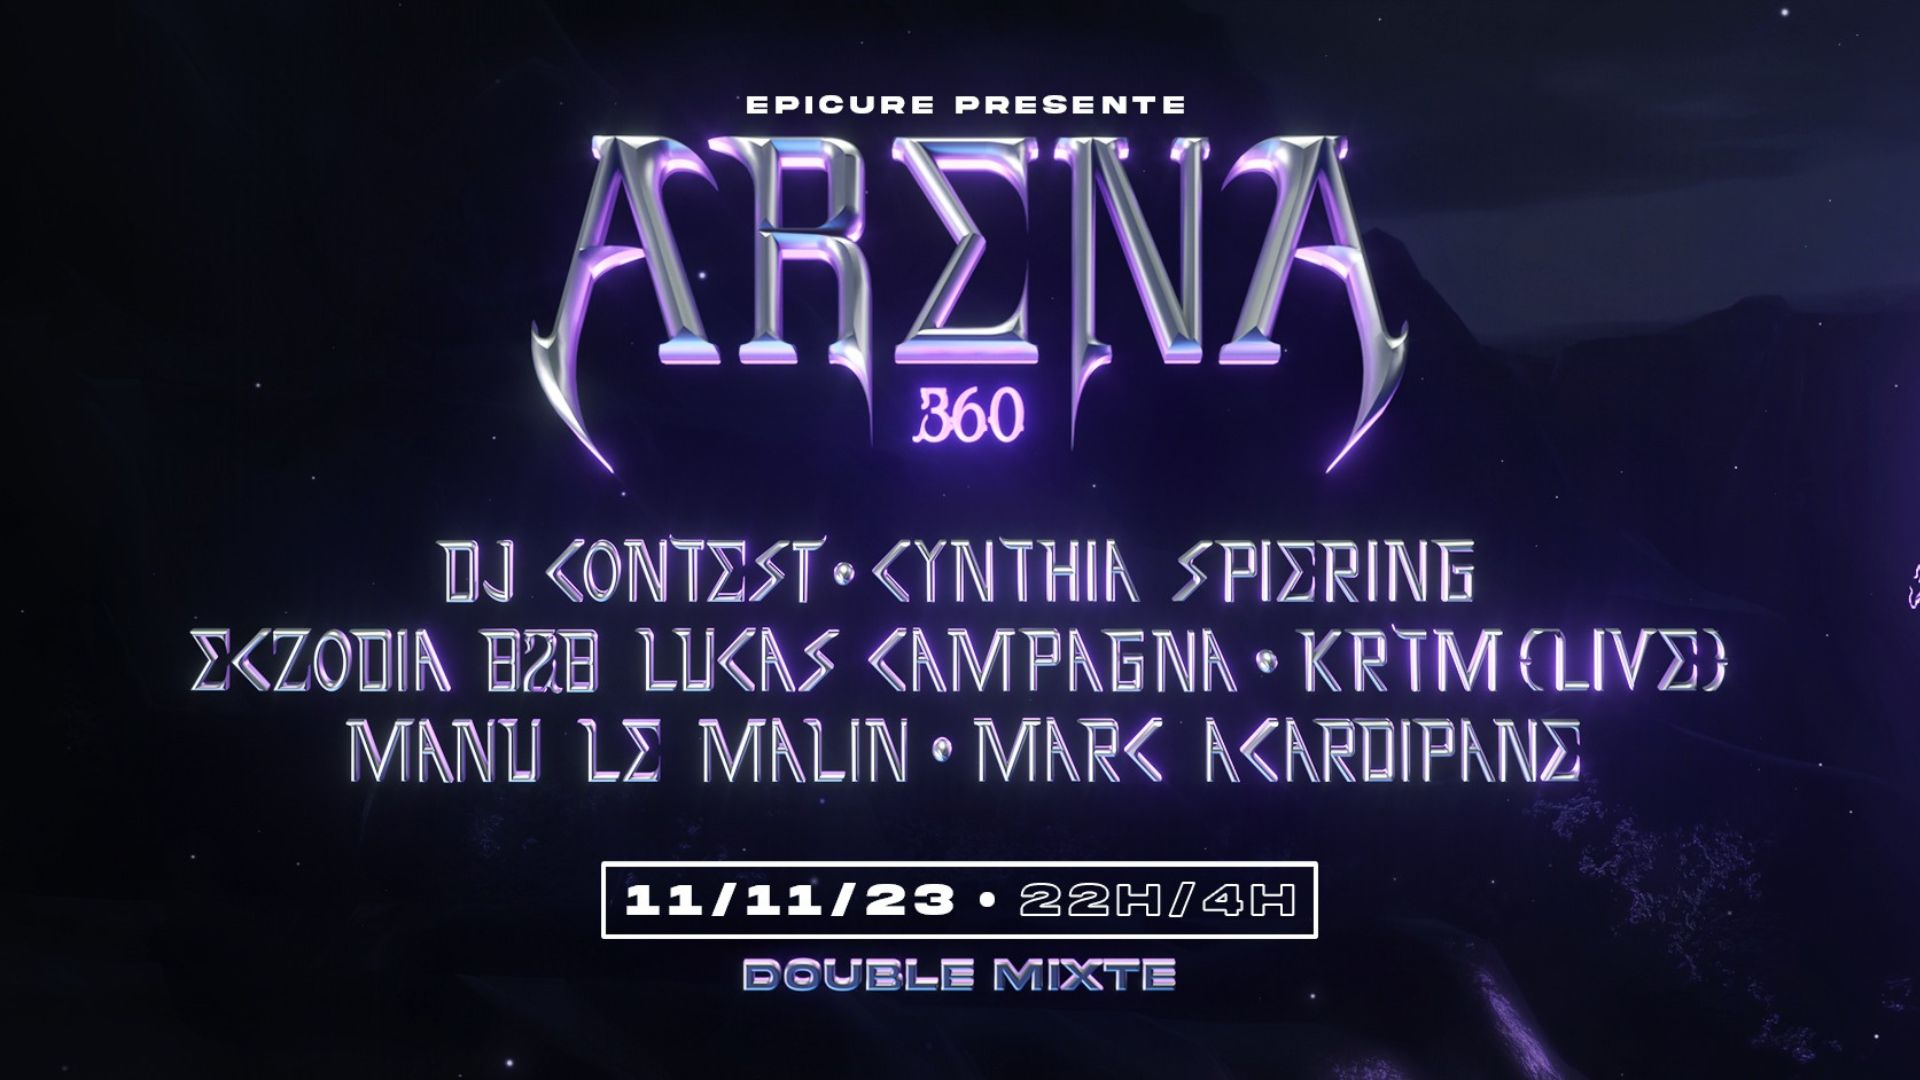 Affiche de la soirée Arena 360 au Double Mixte